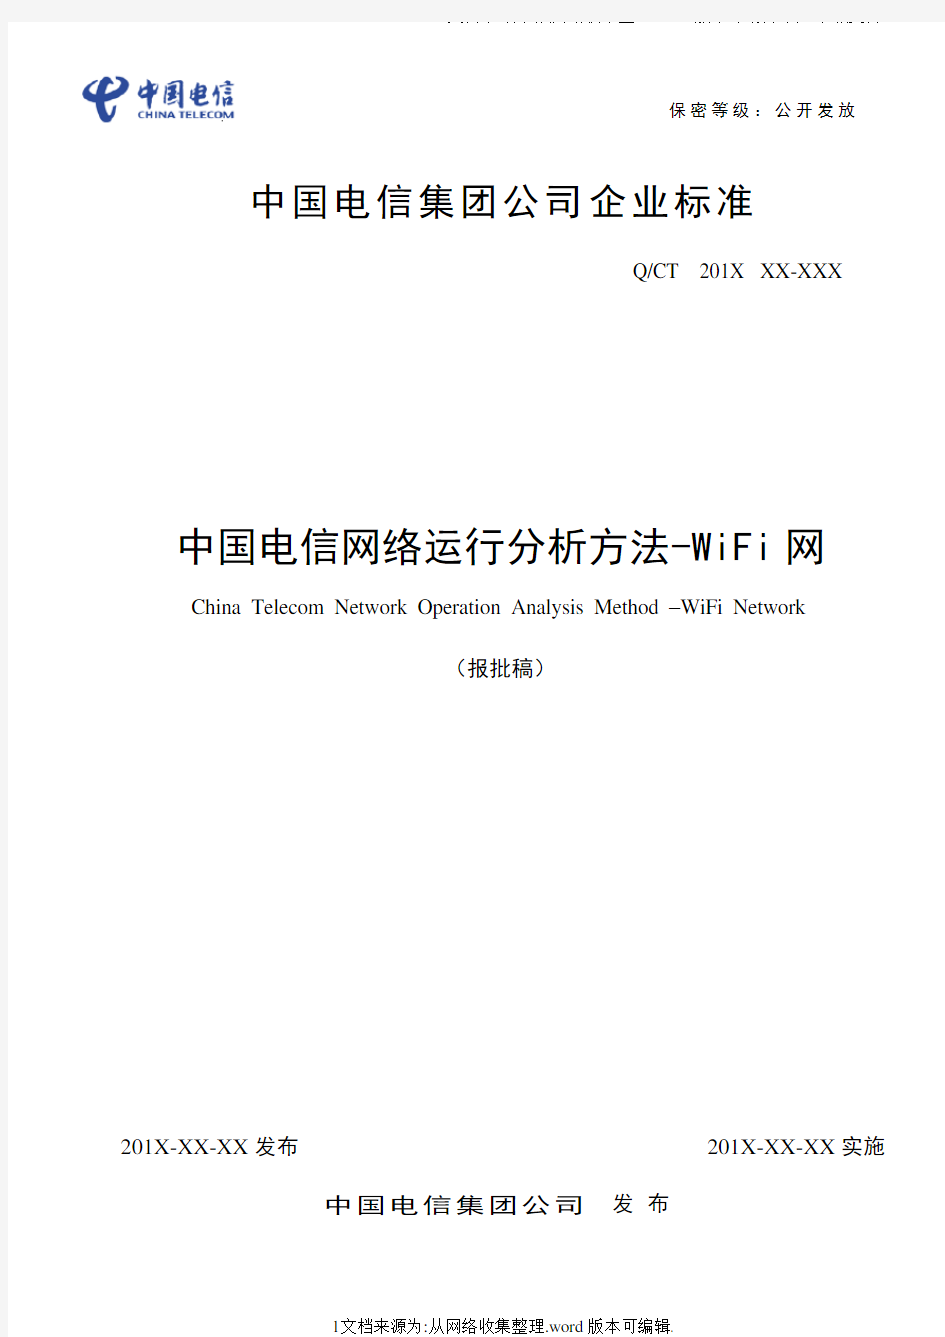 中国电信网络运行分析方法-WIFI网络